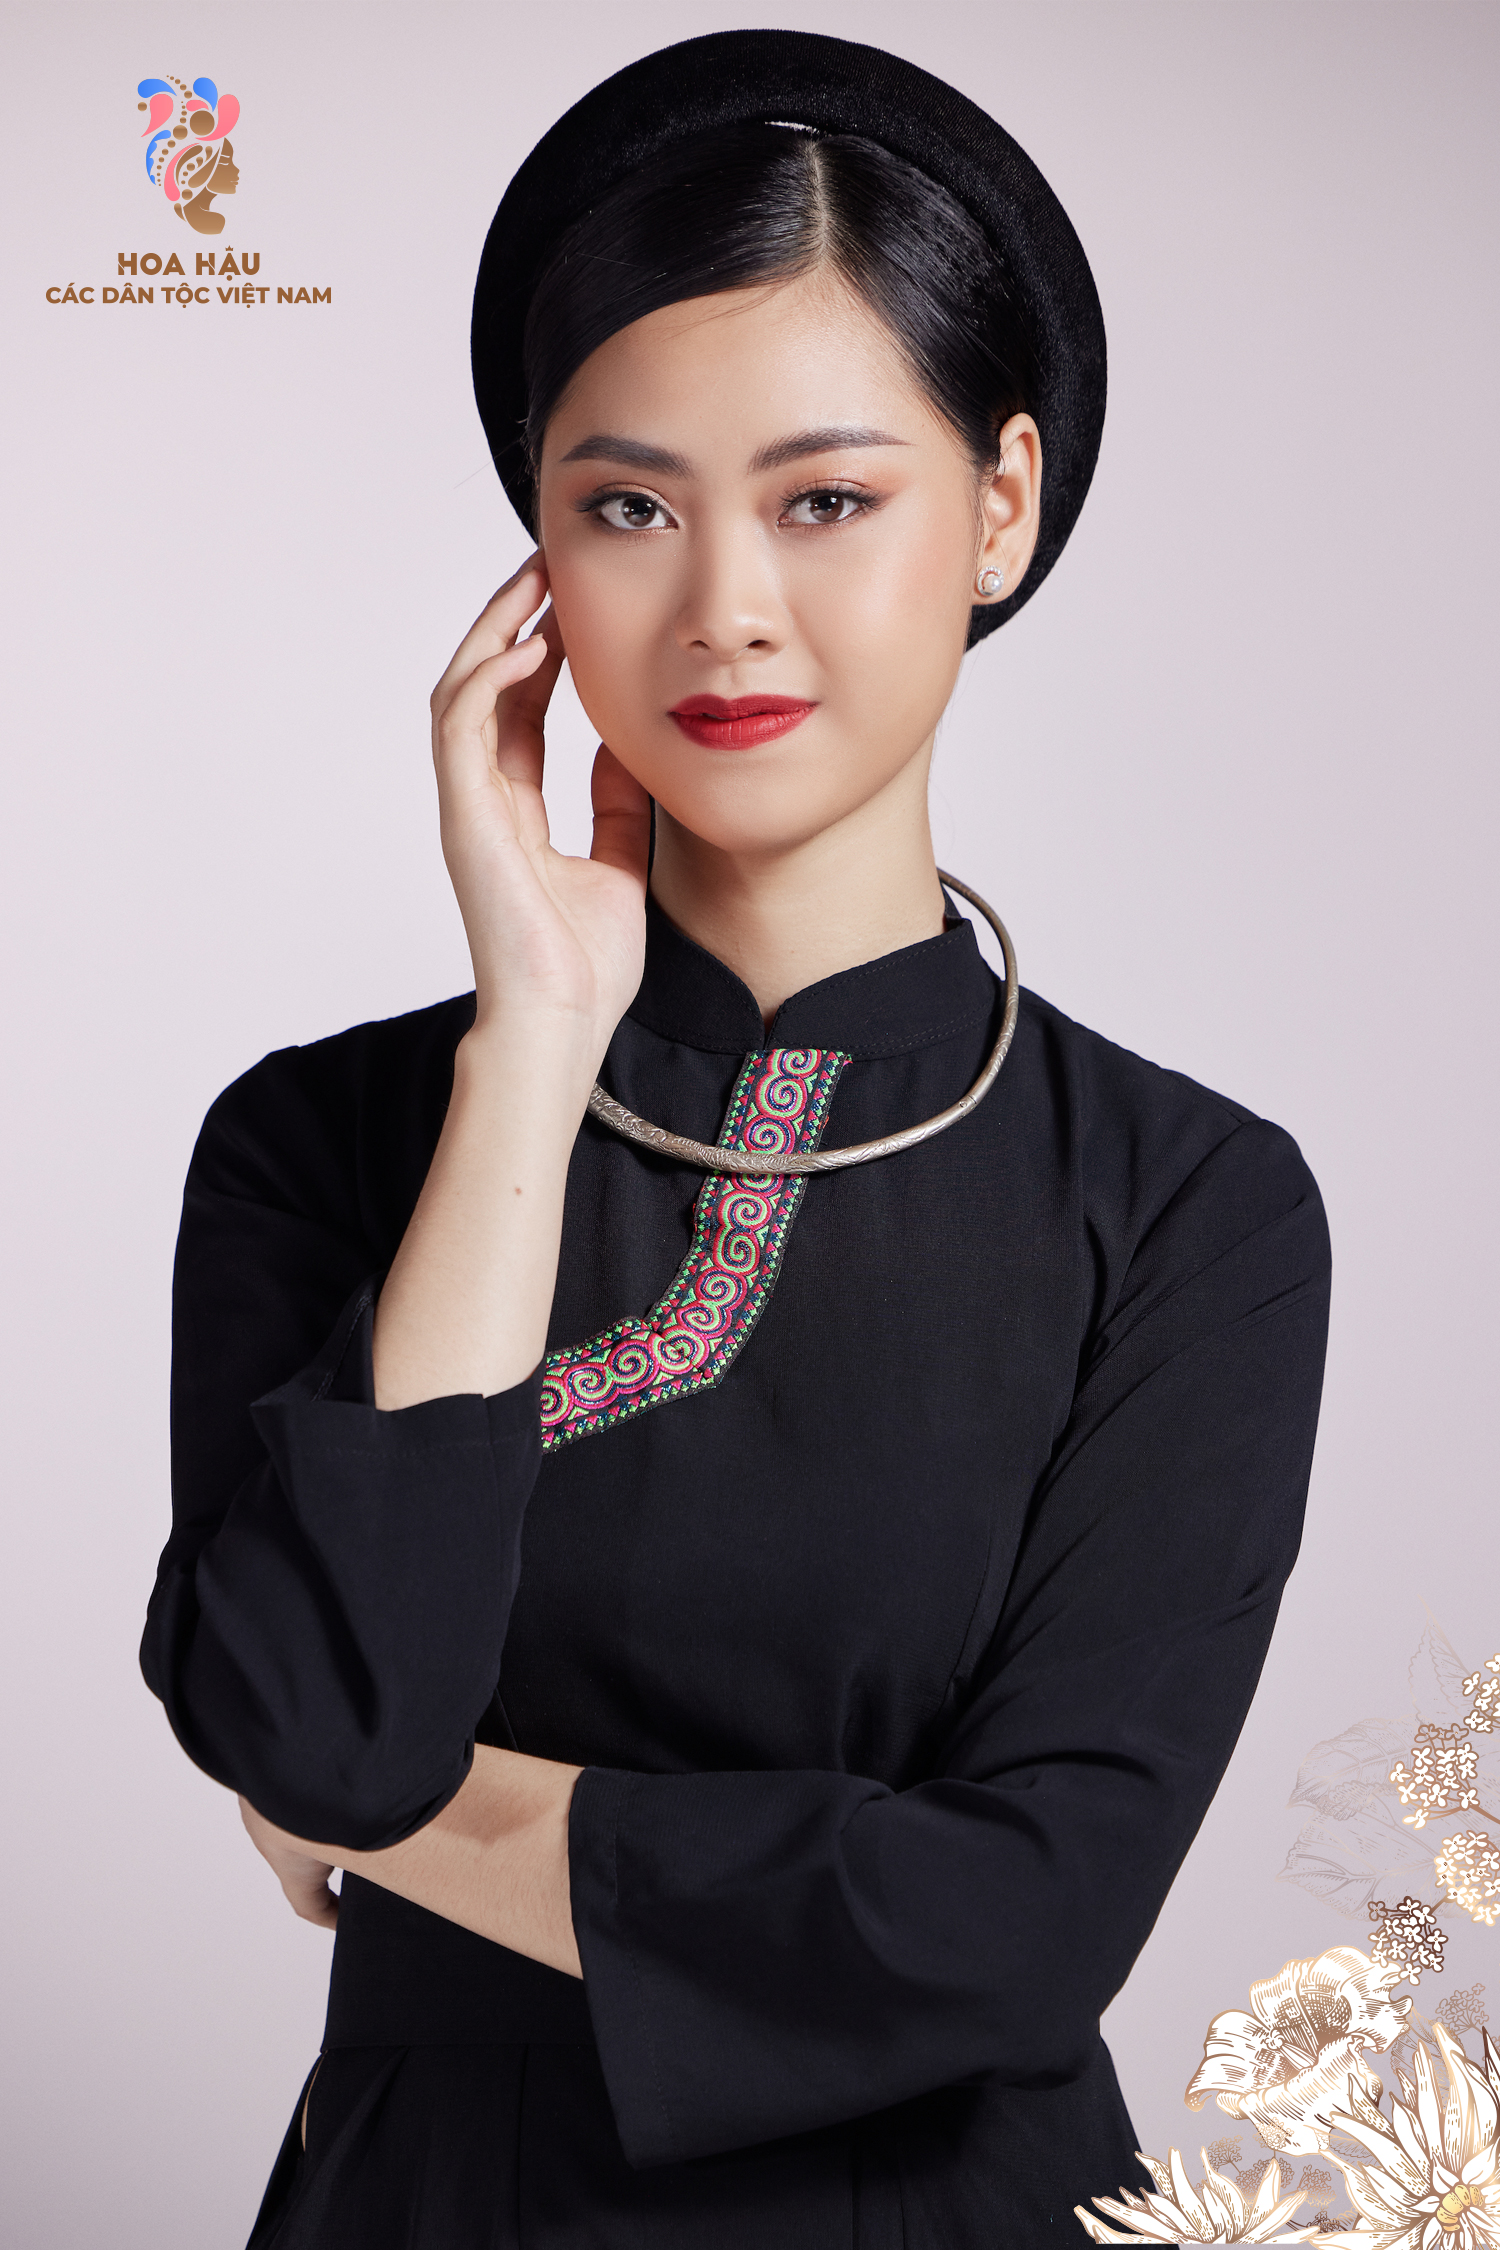 30 thí sinh Hoa hậu các dân tộc Việt Nam duyên dáng trong trang phục truyền thống - Ảnh 8.